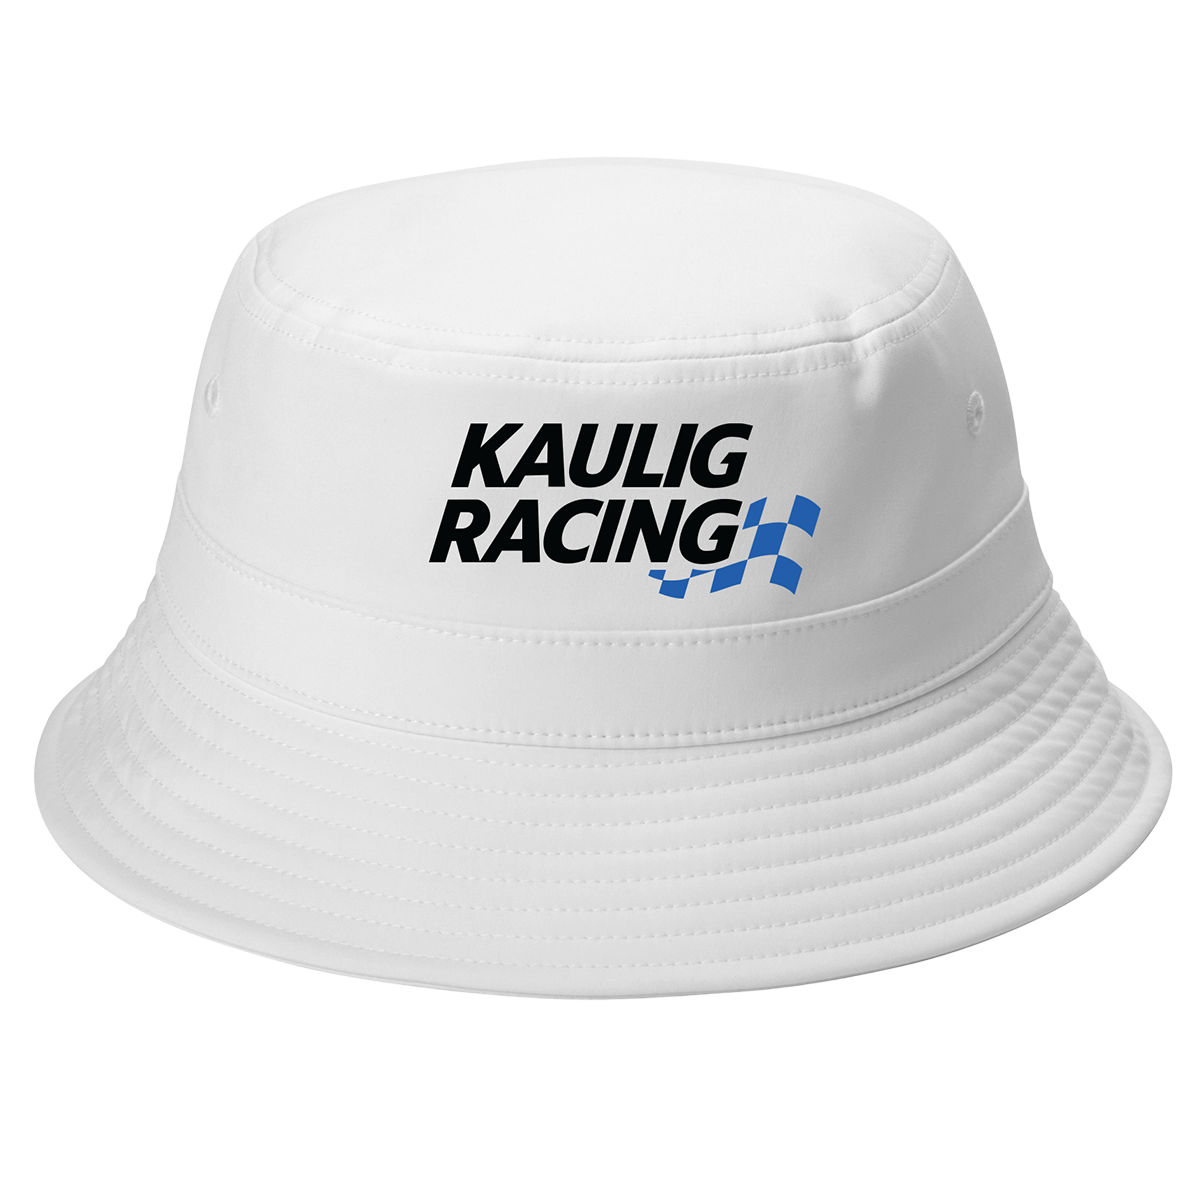 Kaulig Racing Bucket Hat Image